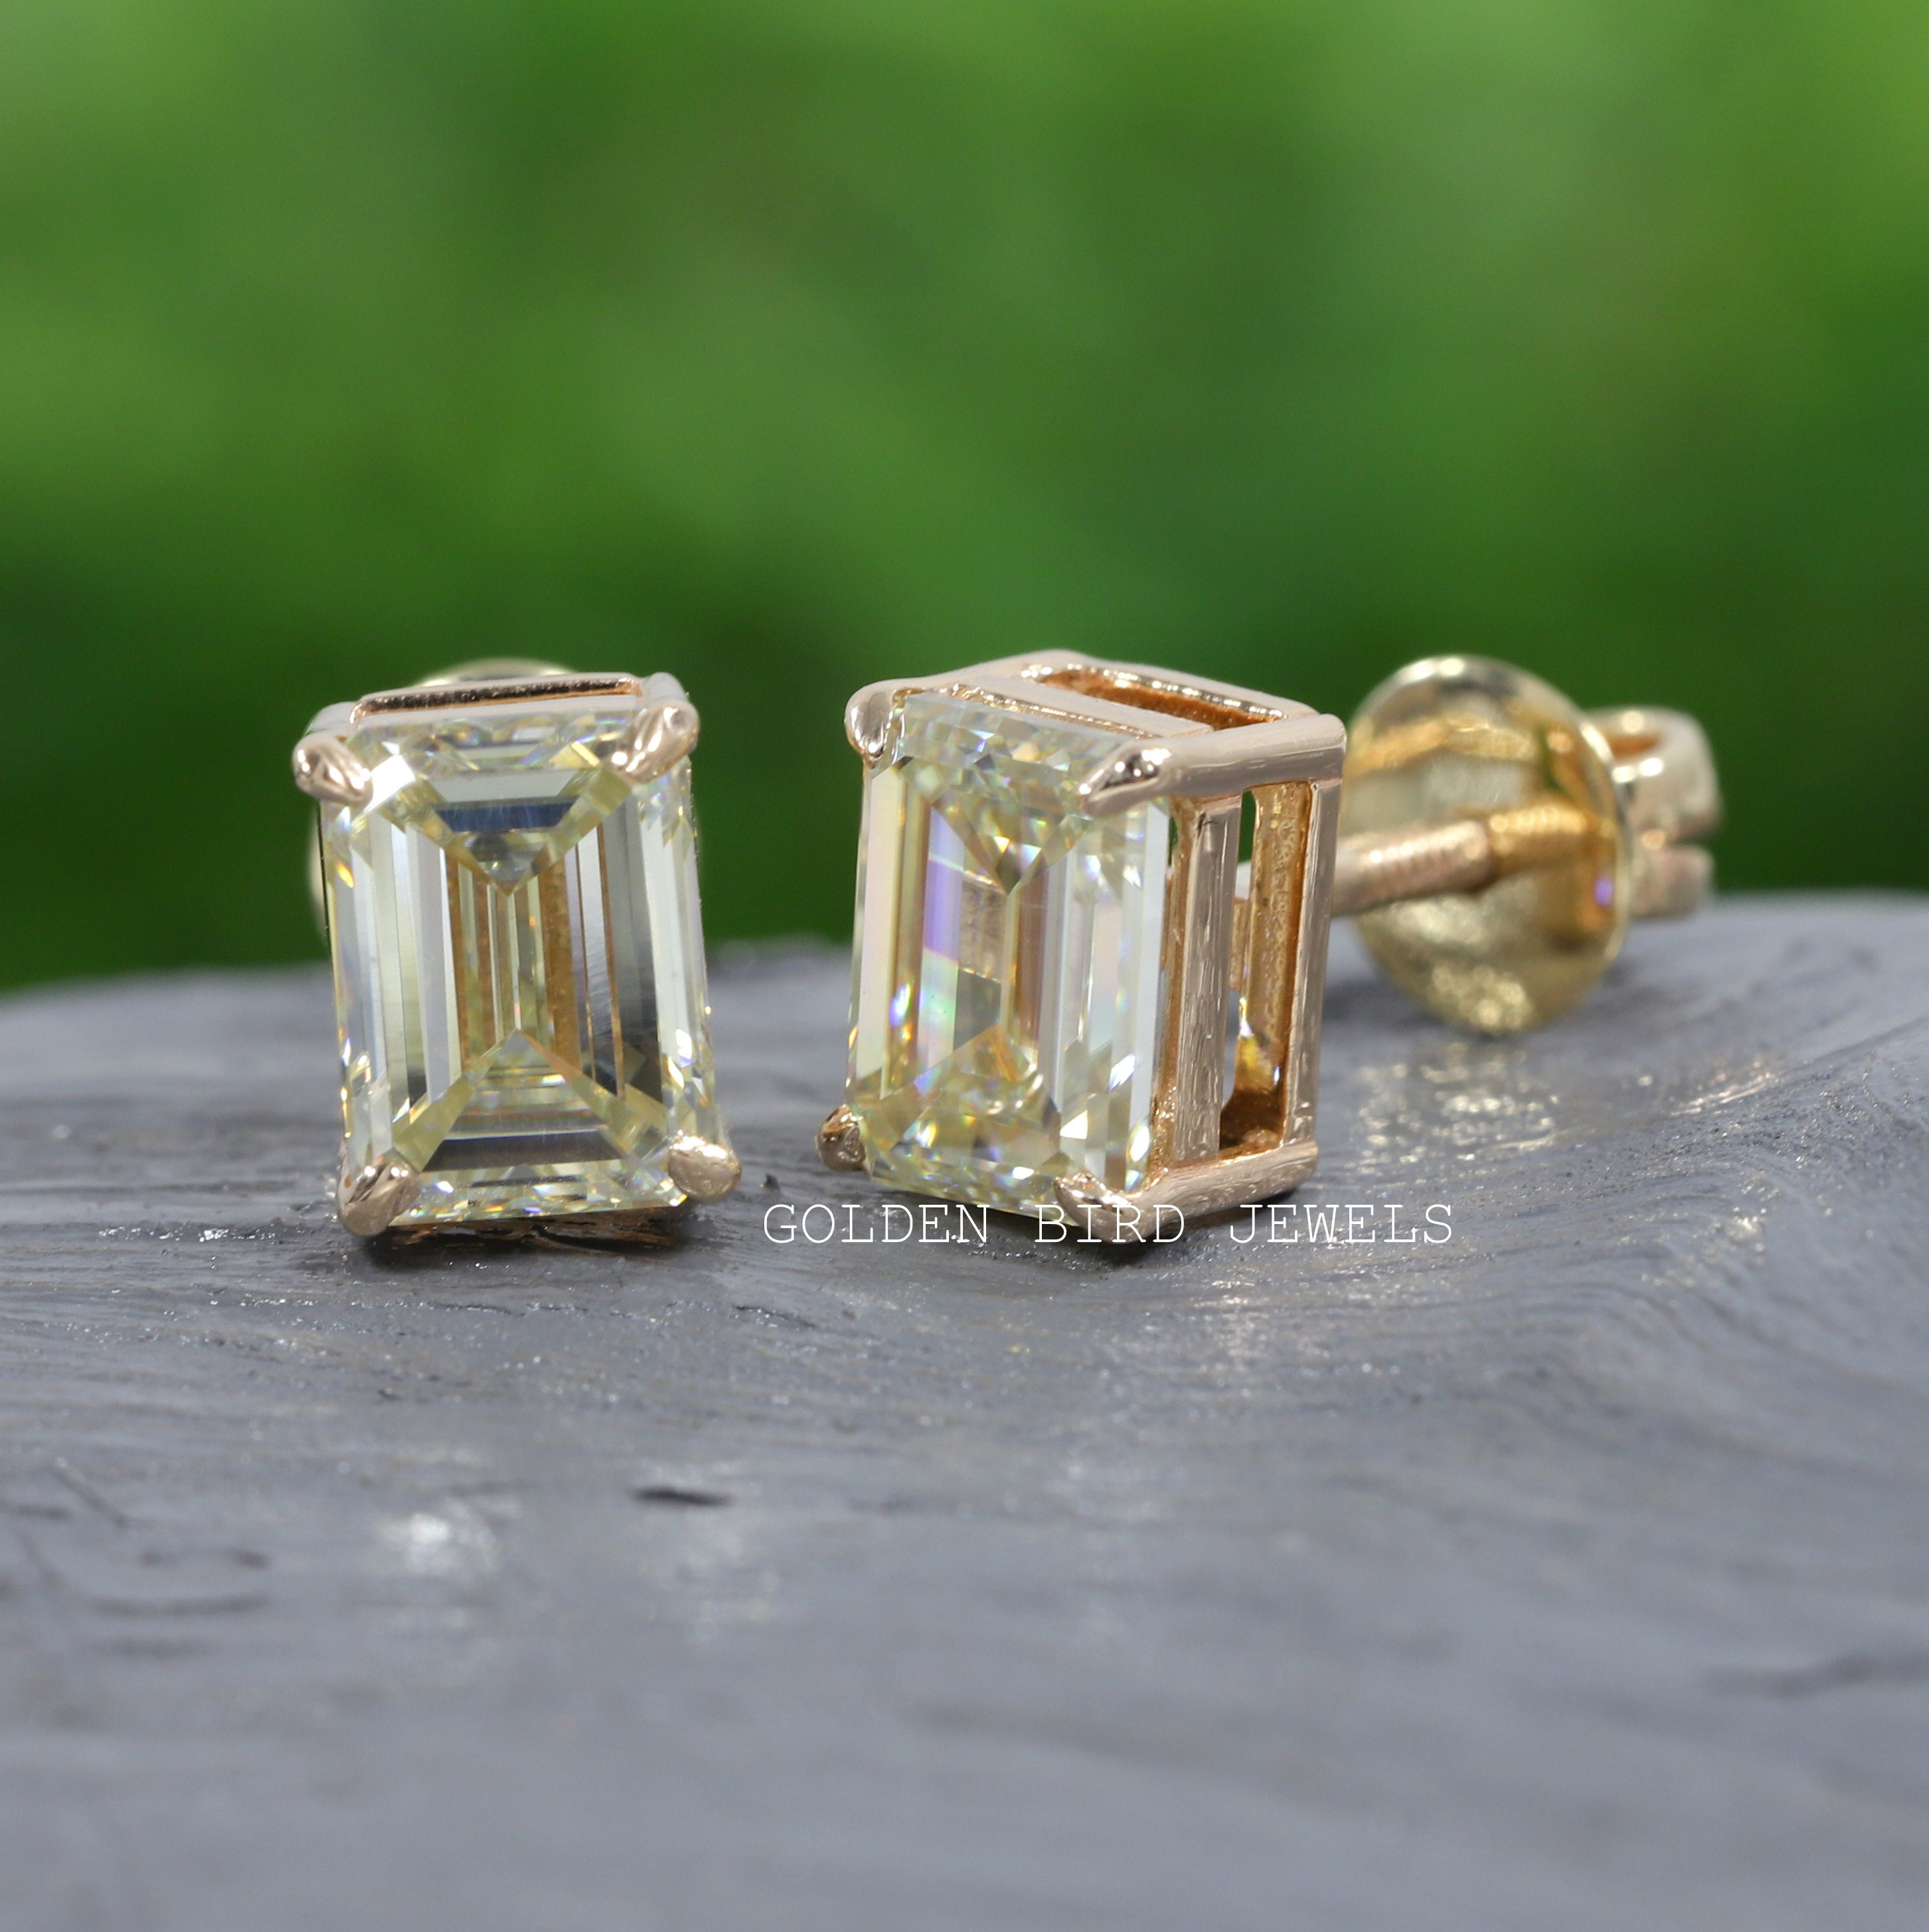 Moissanite Stud Earrings / Emerald Cut Gold Earrings / | Etsy